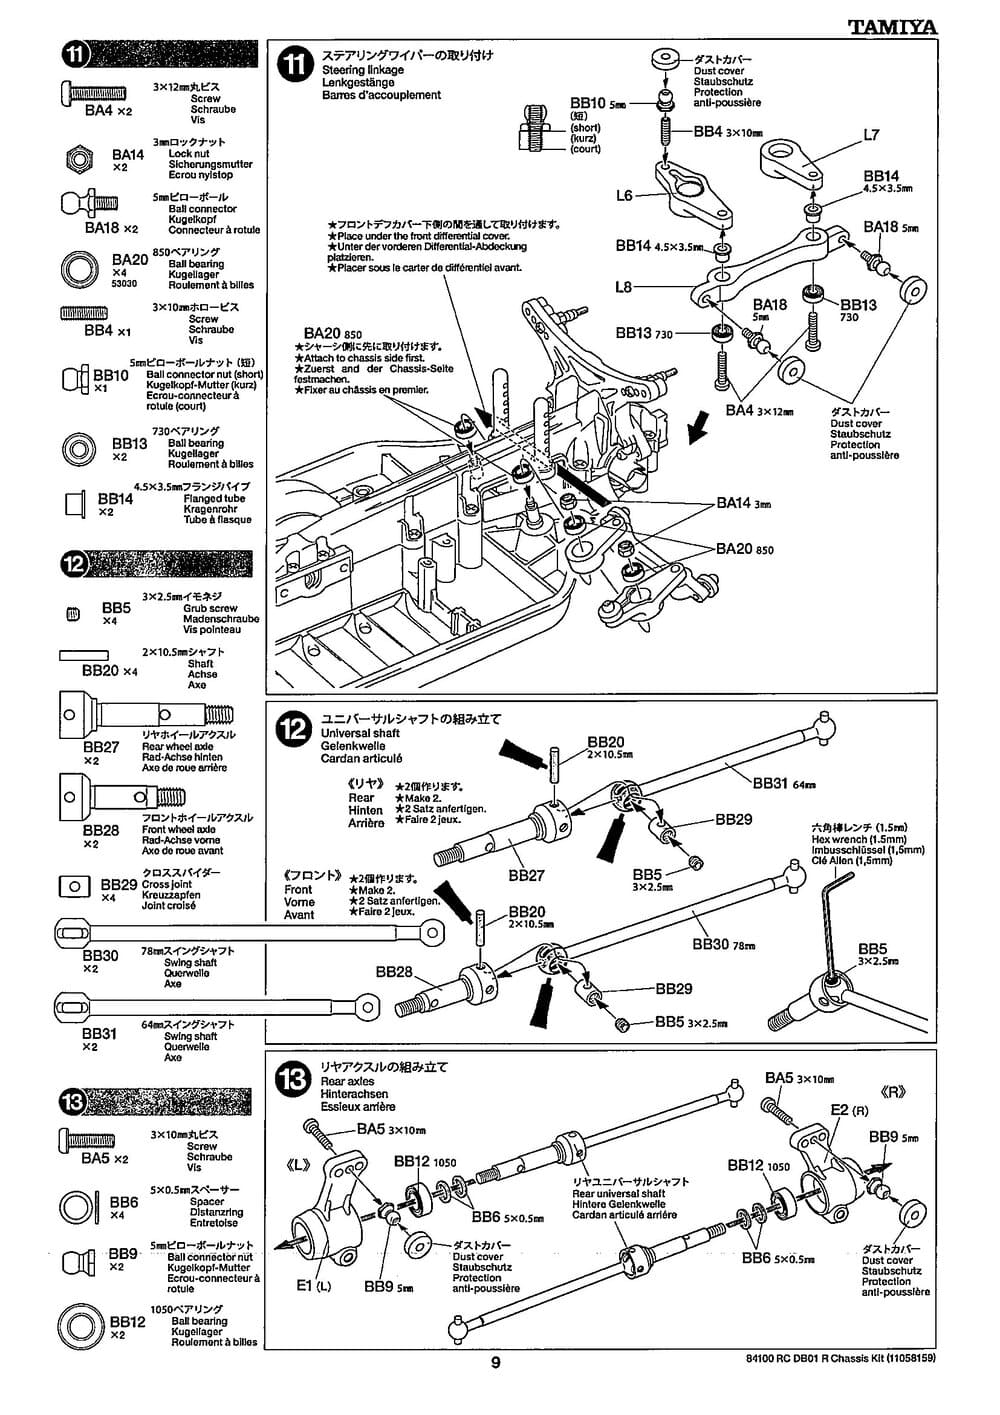 Tamiya - DB-01R Chassis - Manual - Page 9